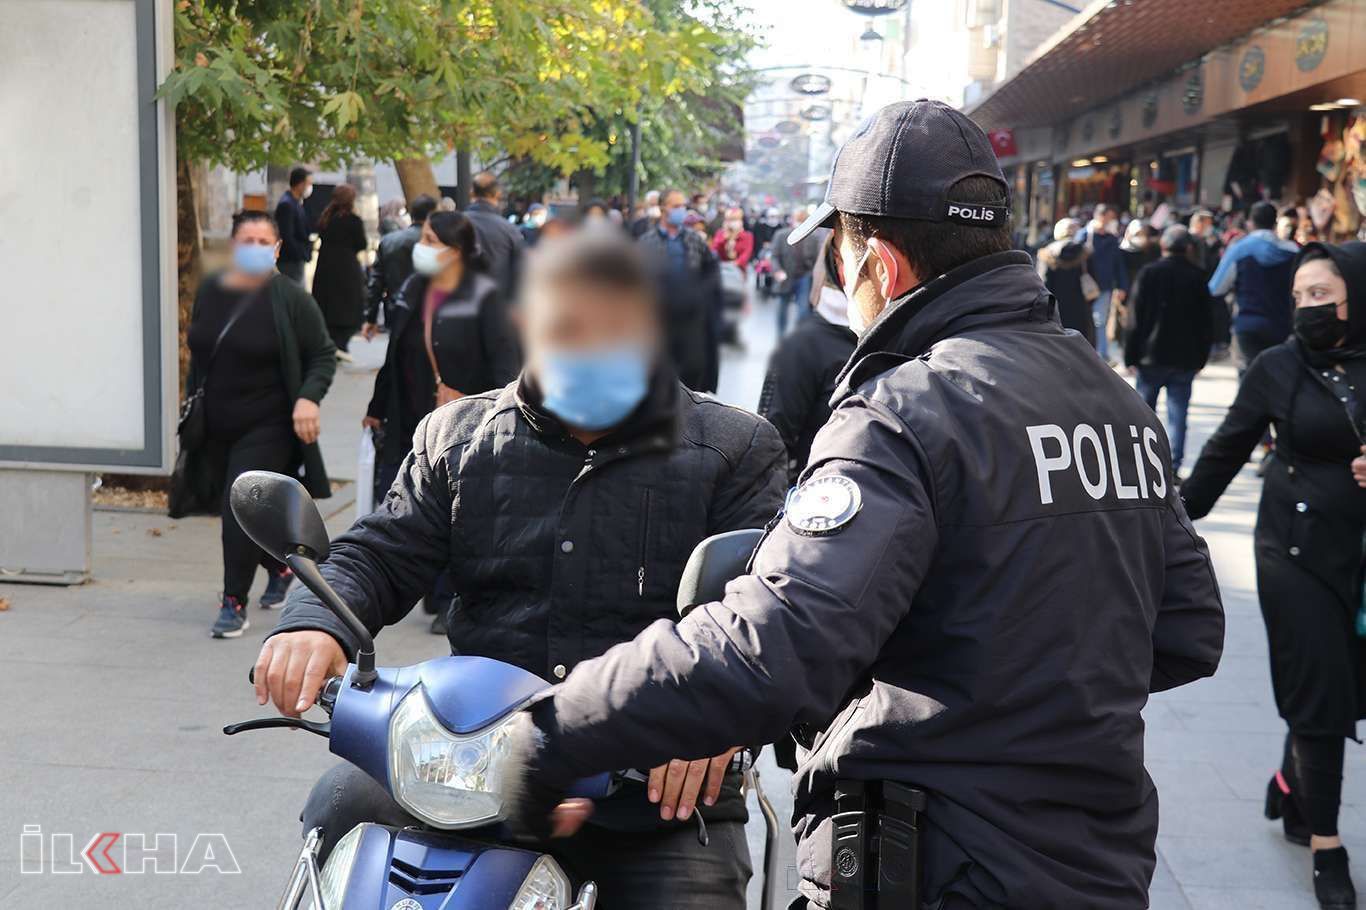 Gaziantep'te Covid-19 kurallarını ihlal eden 936 kişiye para cezası